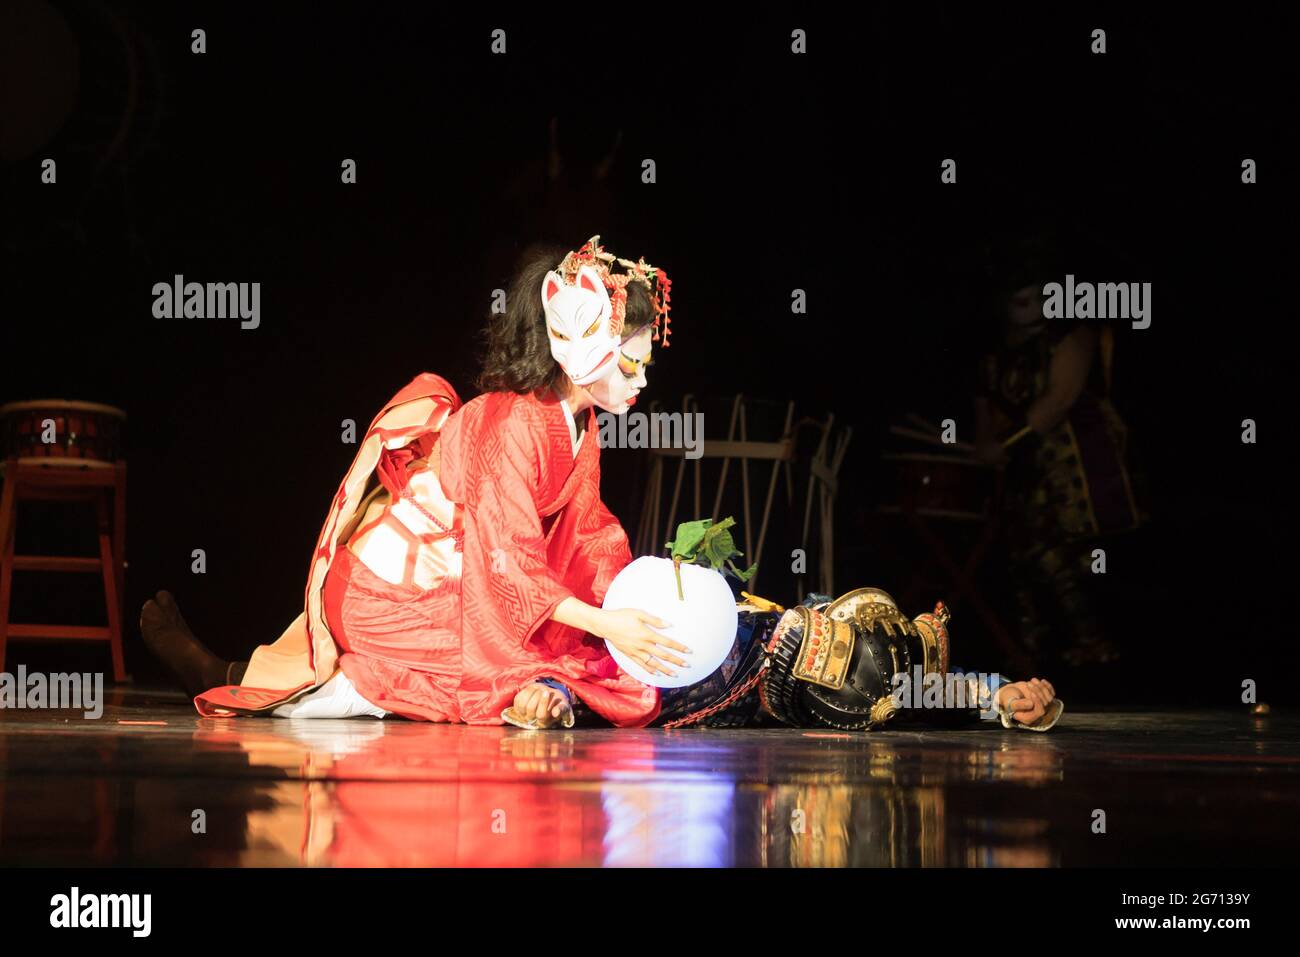 Une japonaise pleure un samouraï mort assis sur ses genoux avec une lampe sur son corps dans l'obscurité. Performances japonaises traditionnelles. Banque D'Images